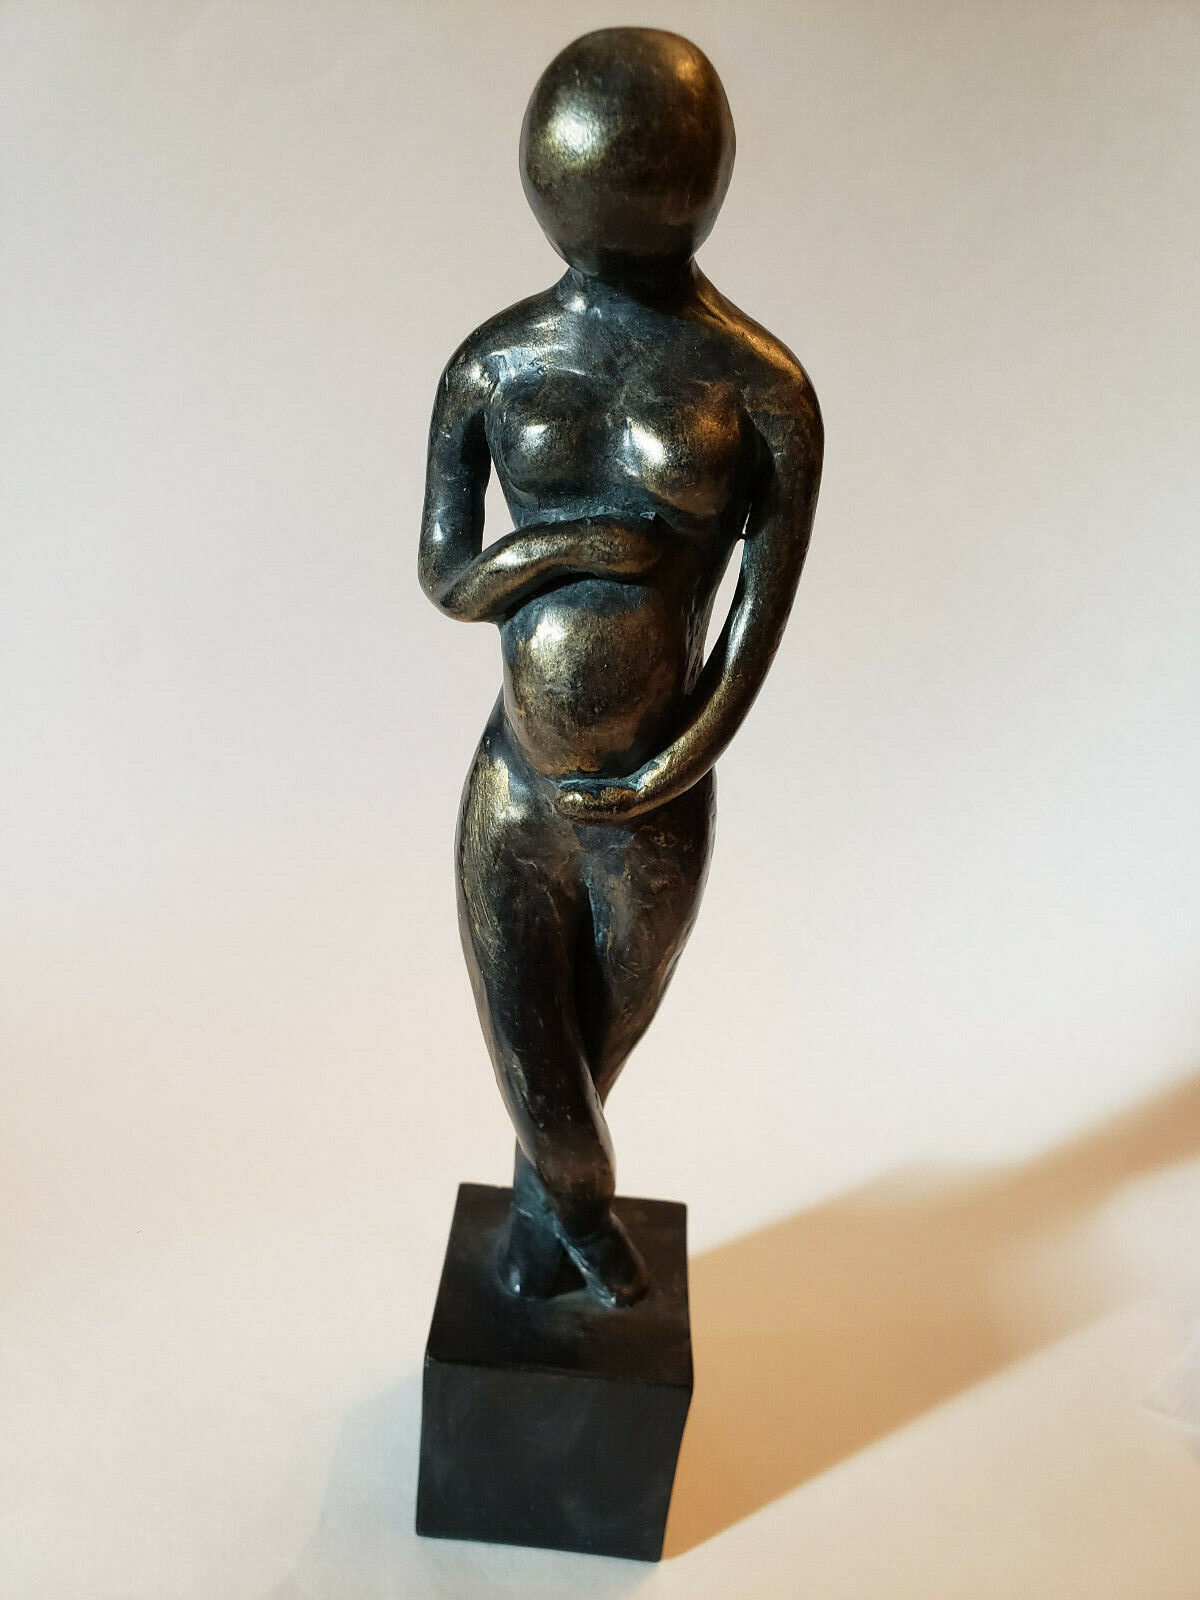 Unique  Naked pregnant women art mini statue figurine